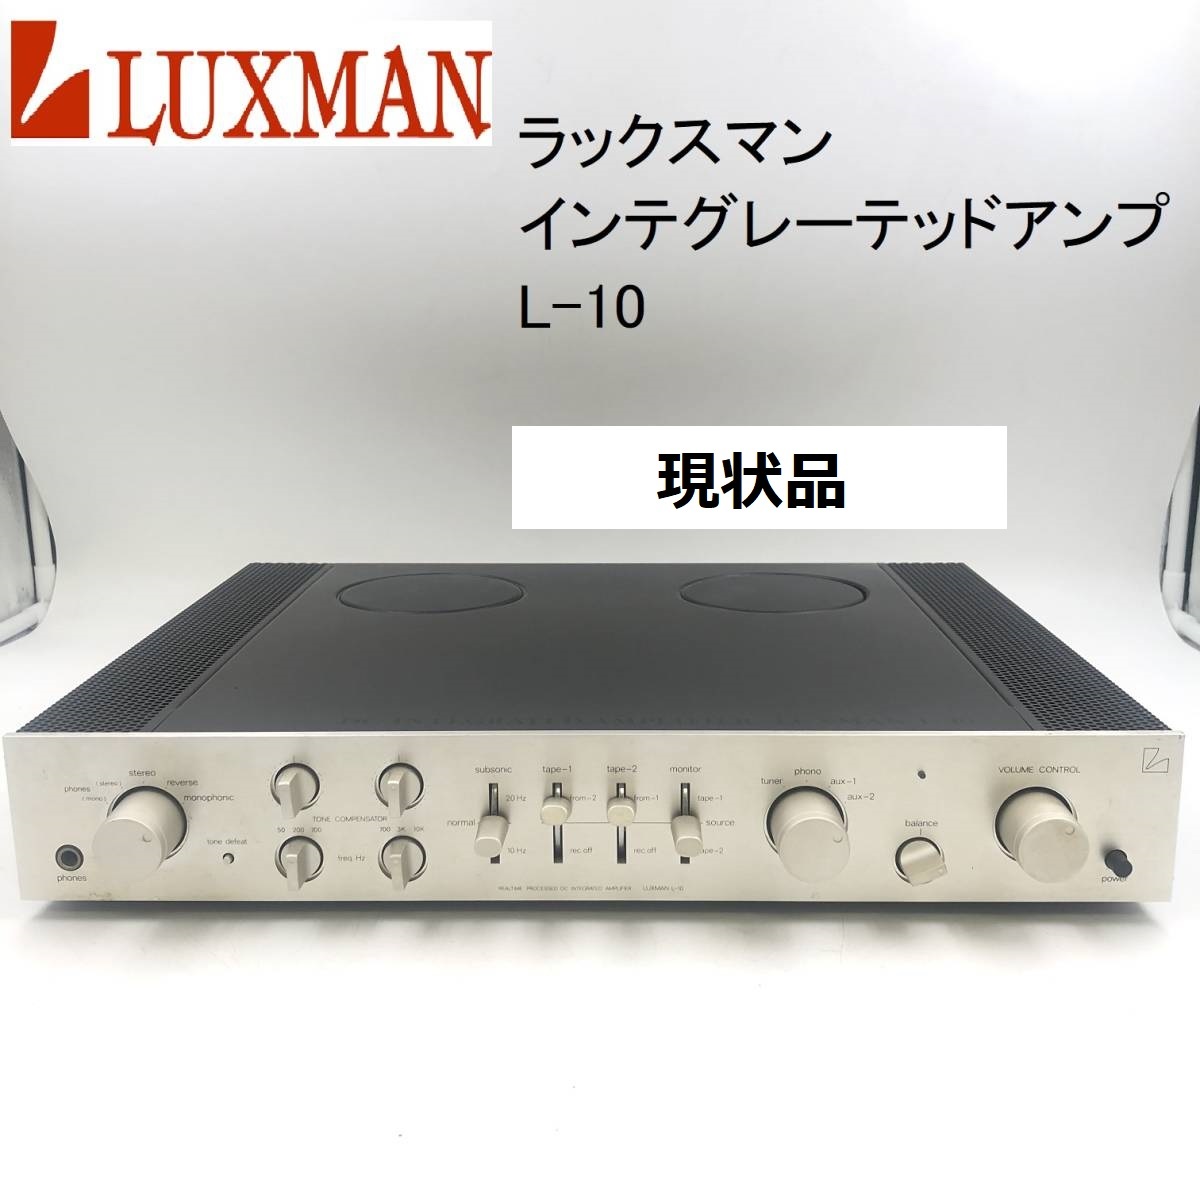 ヤフオク! -「luxman l-10」の落札相場・落札価格